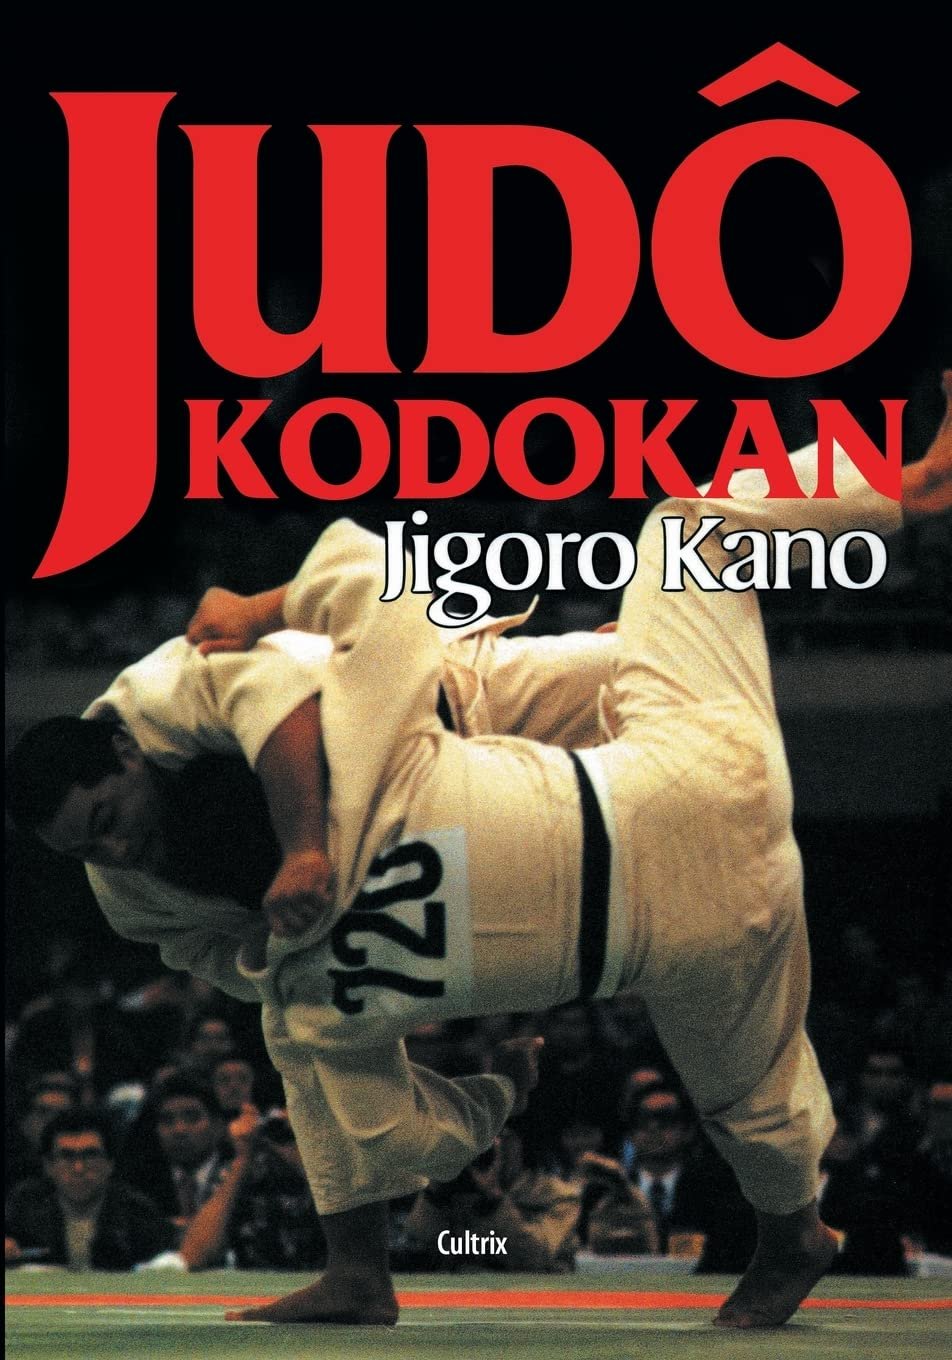 livro de judo